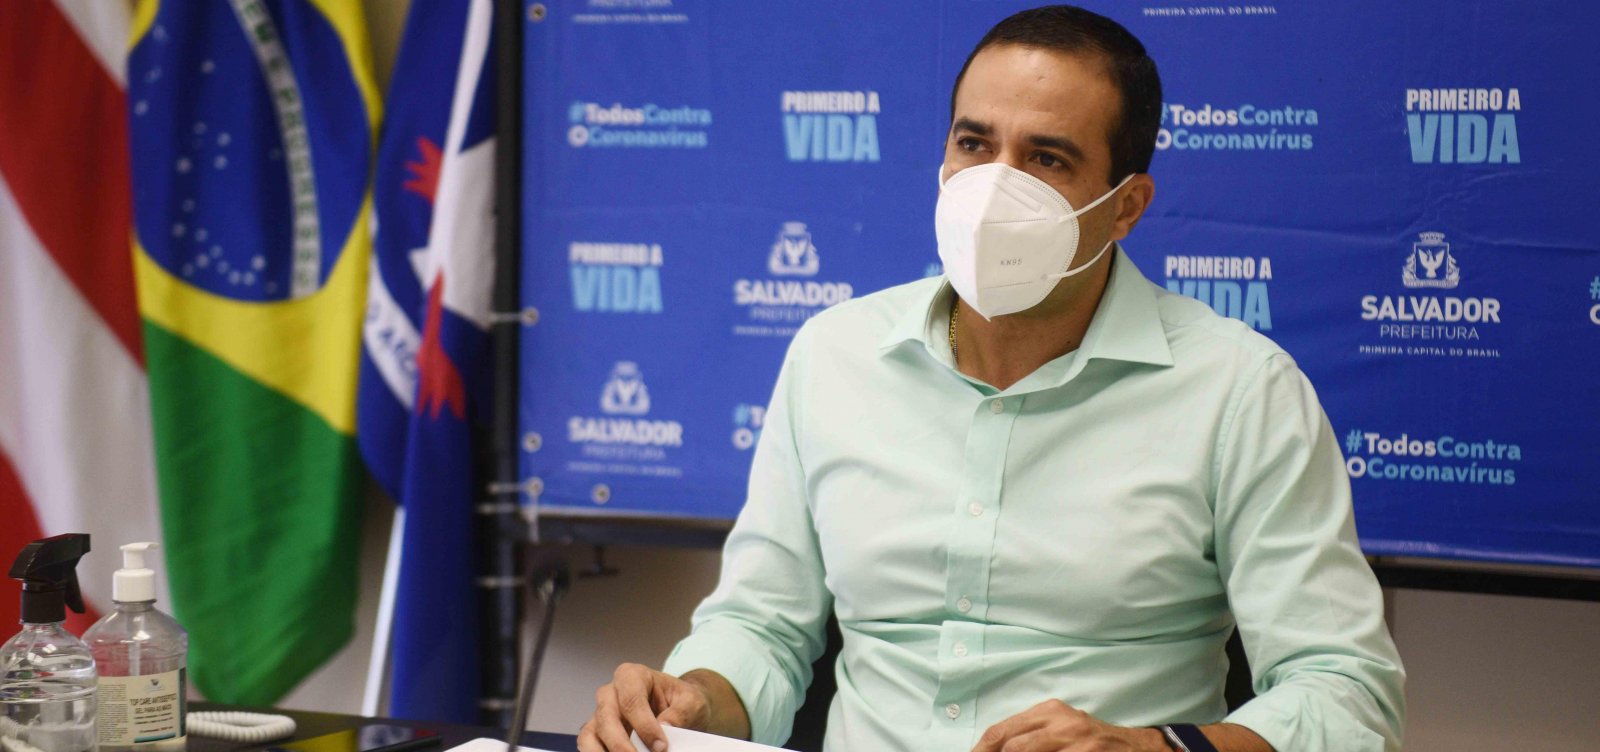 Prefeitura anuncia benefício de até R$ 1,1 mil para profissionais de eventos em Salvador